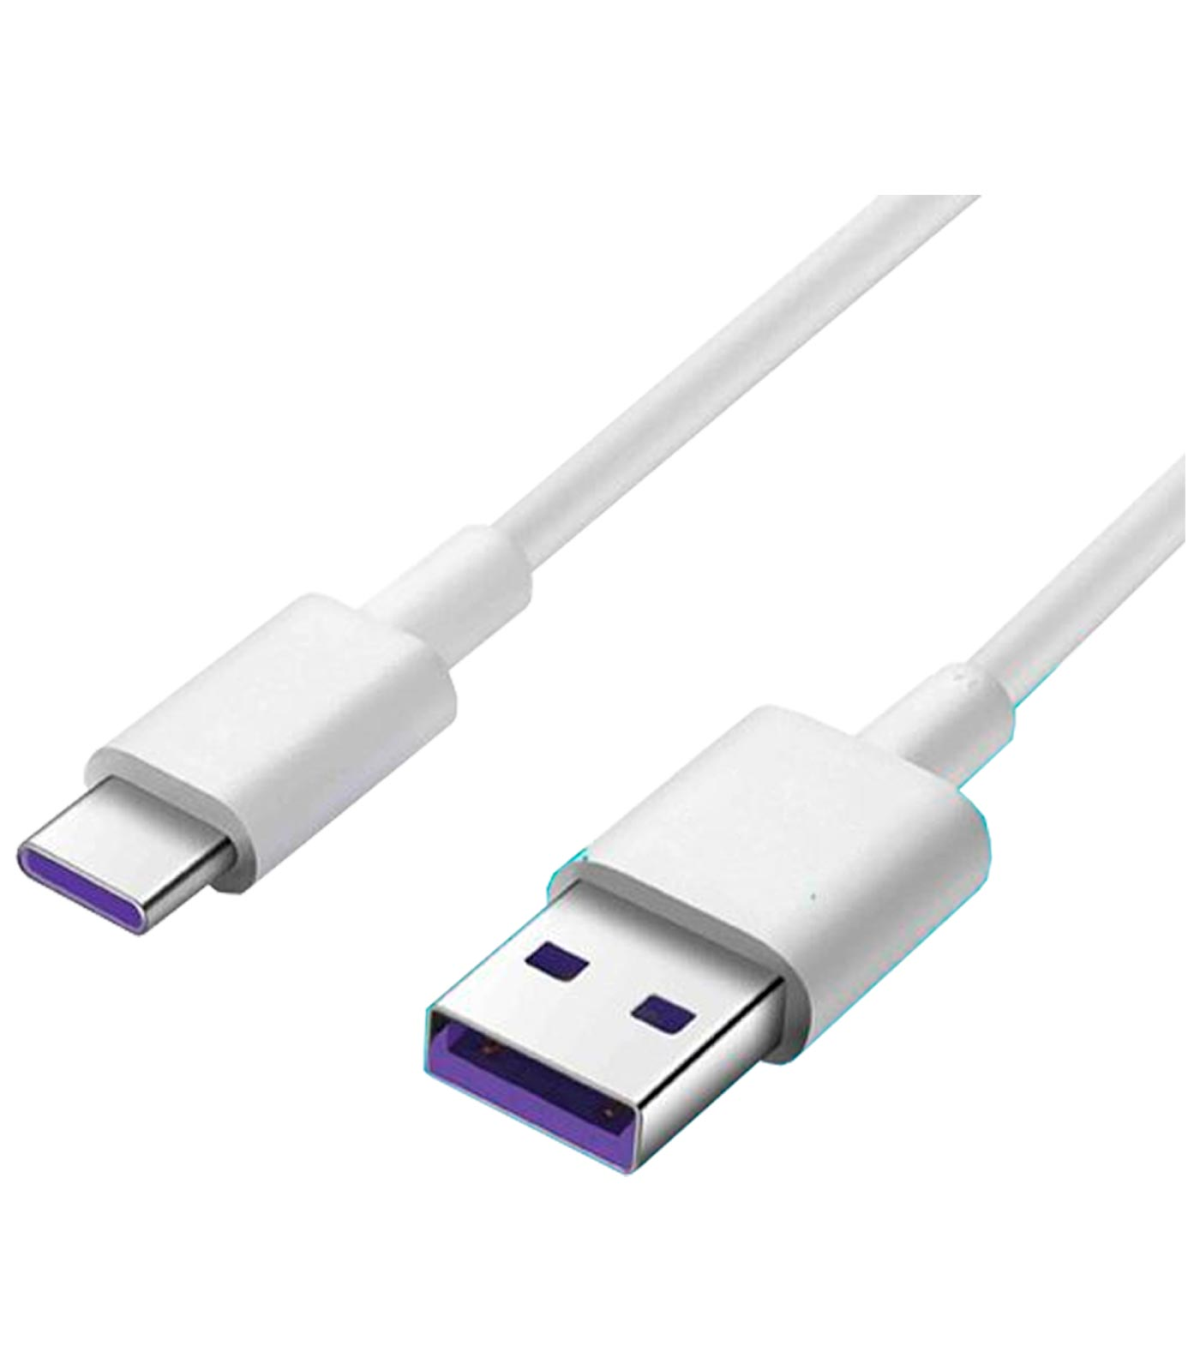 Tradineur - Cargador para móviles - Cable USB Tipo-C - Alto rendimiento /  Carga rápida - 1 Puertos USB - Color Blanco